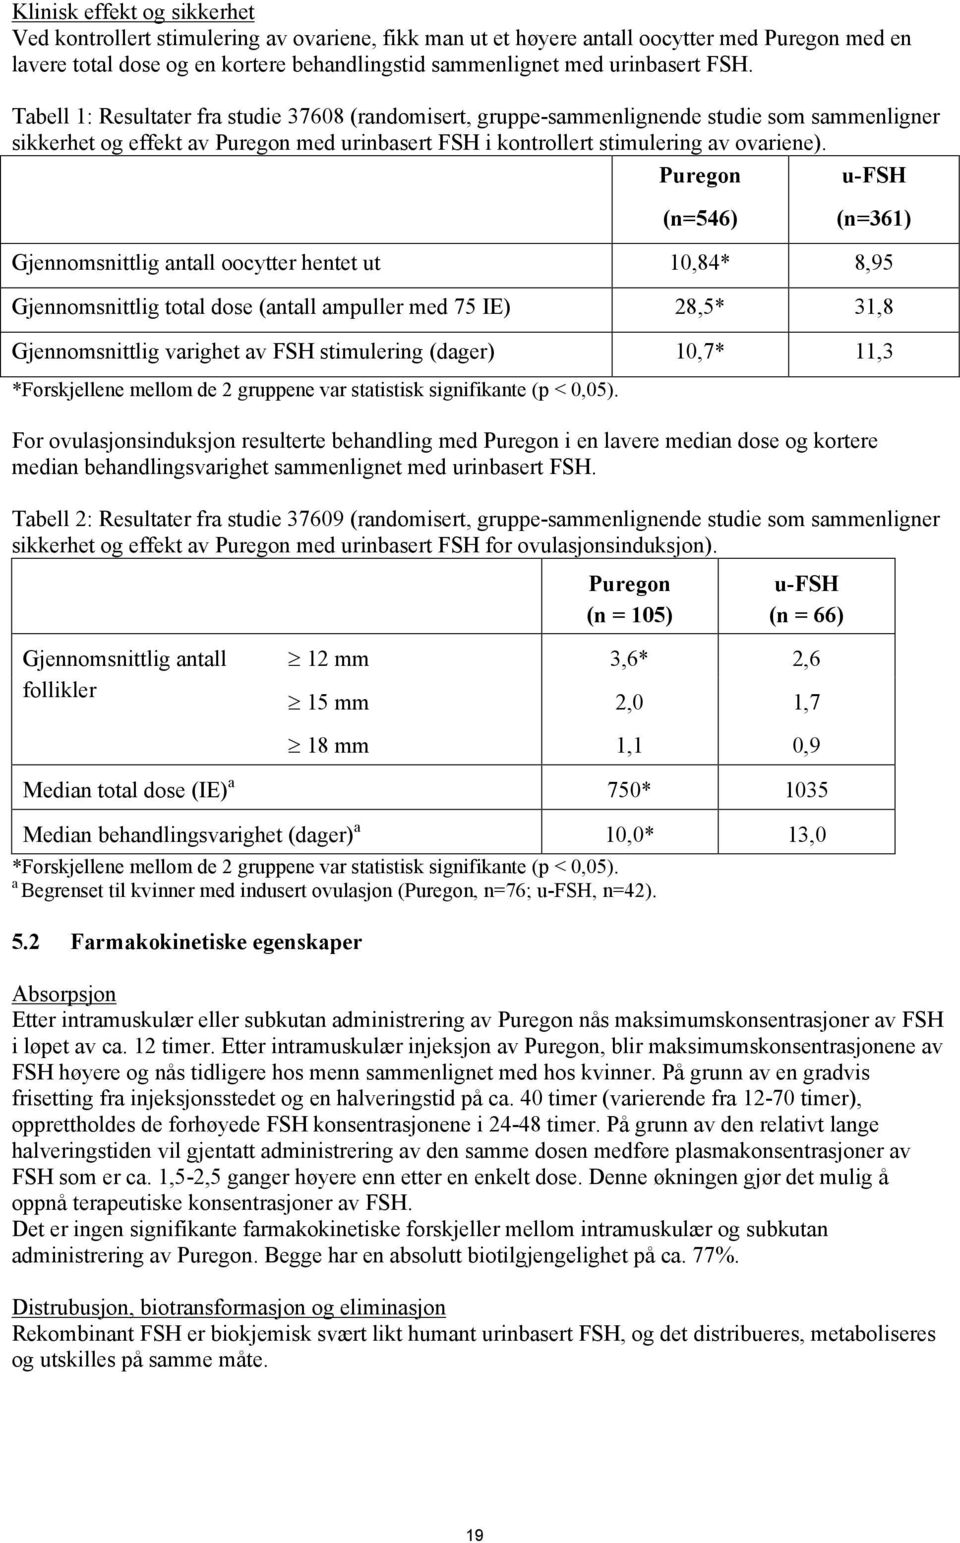 Tabell 1: Resultater fra studie 37608 (randomisert, gruppe-sammenlignende studie som sammenligner sikkerhet og effekt av Puregon med urinbasert FSH i kontrollert stimulering av ovariene).